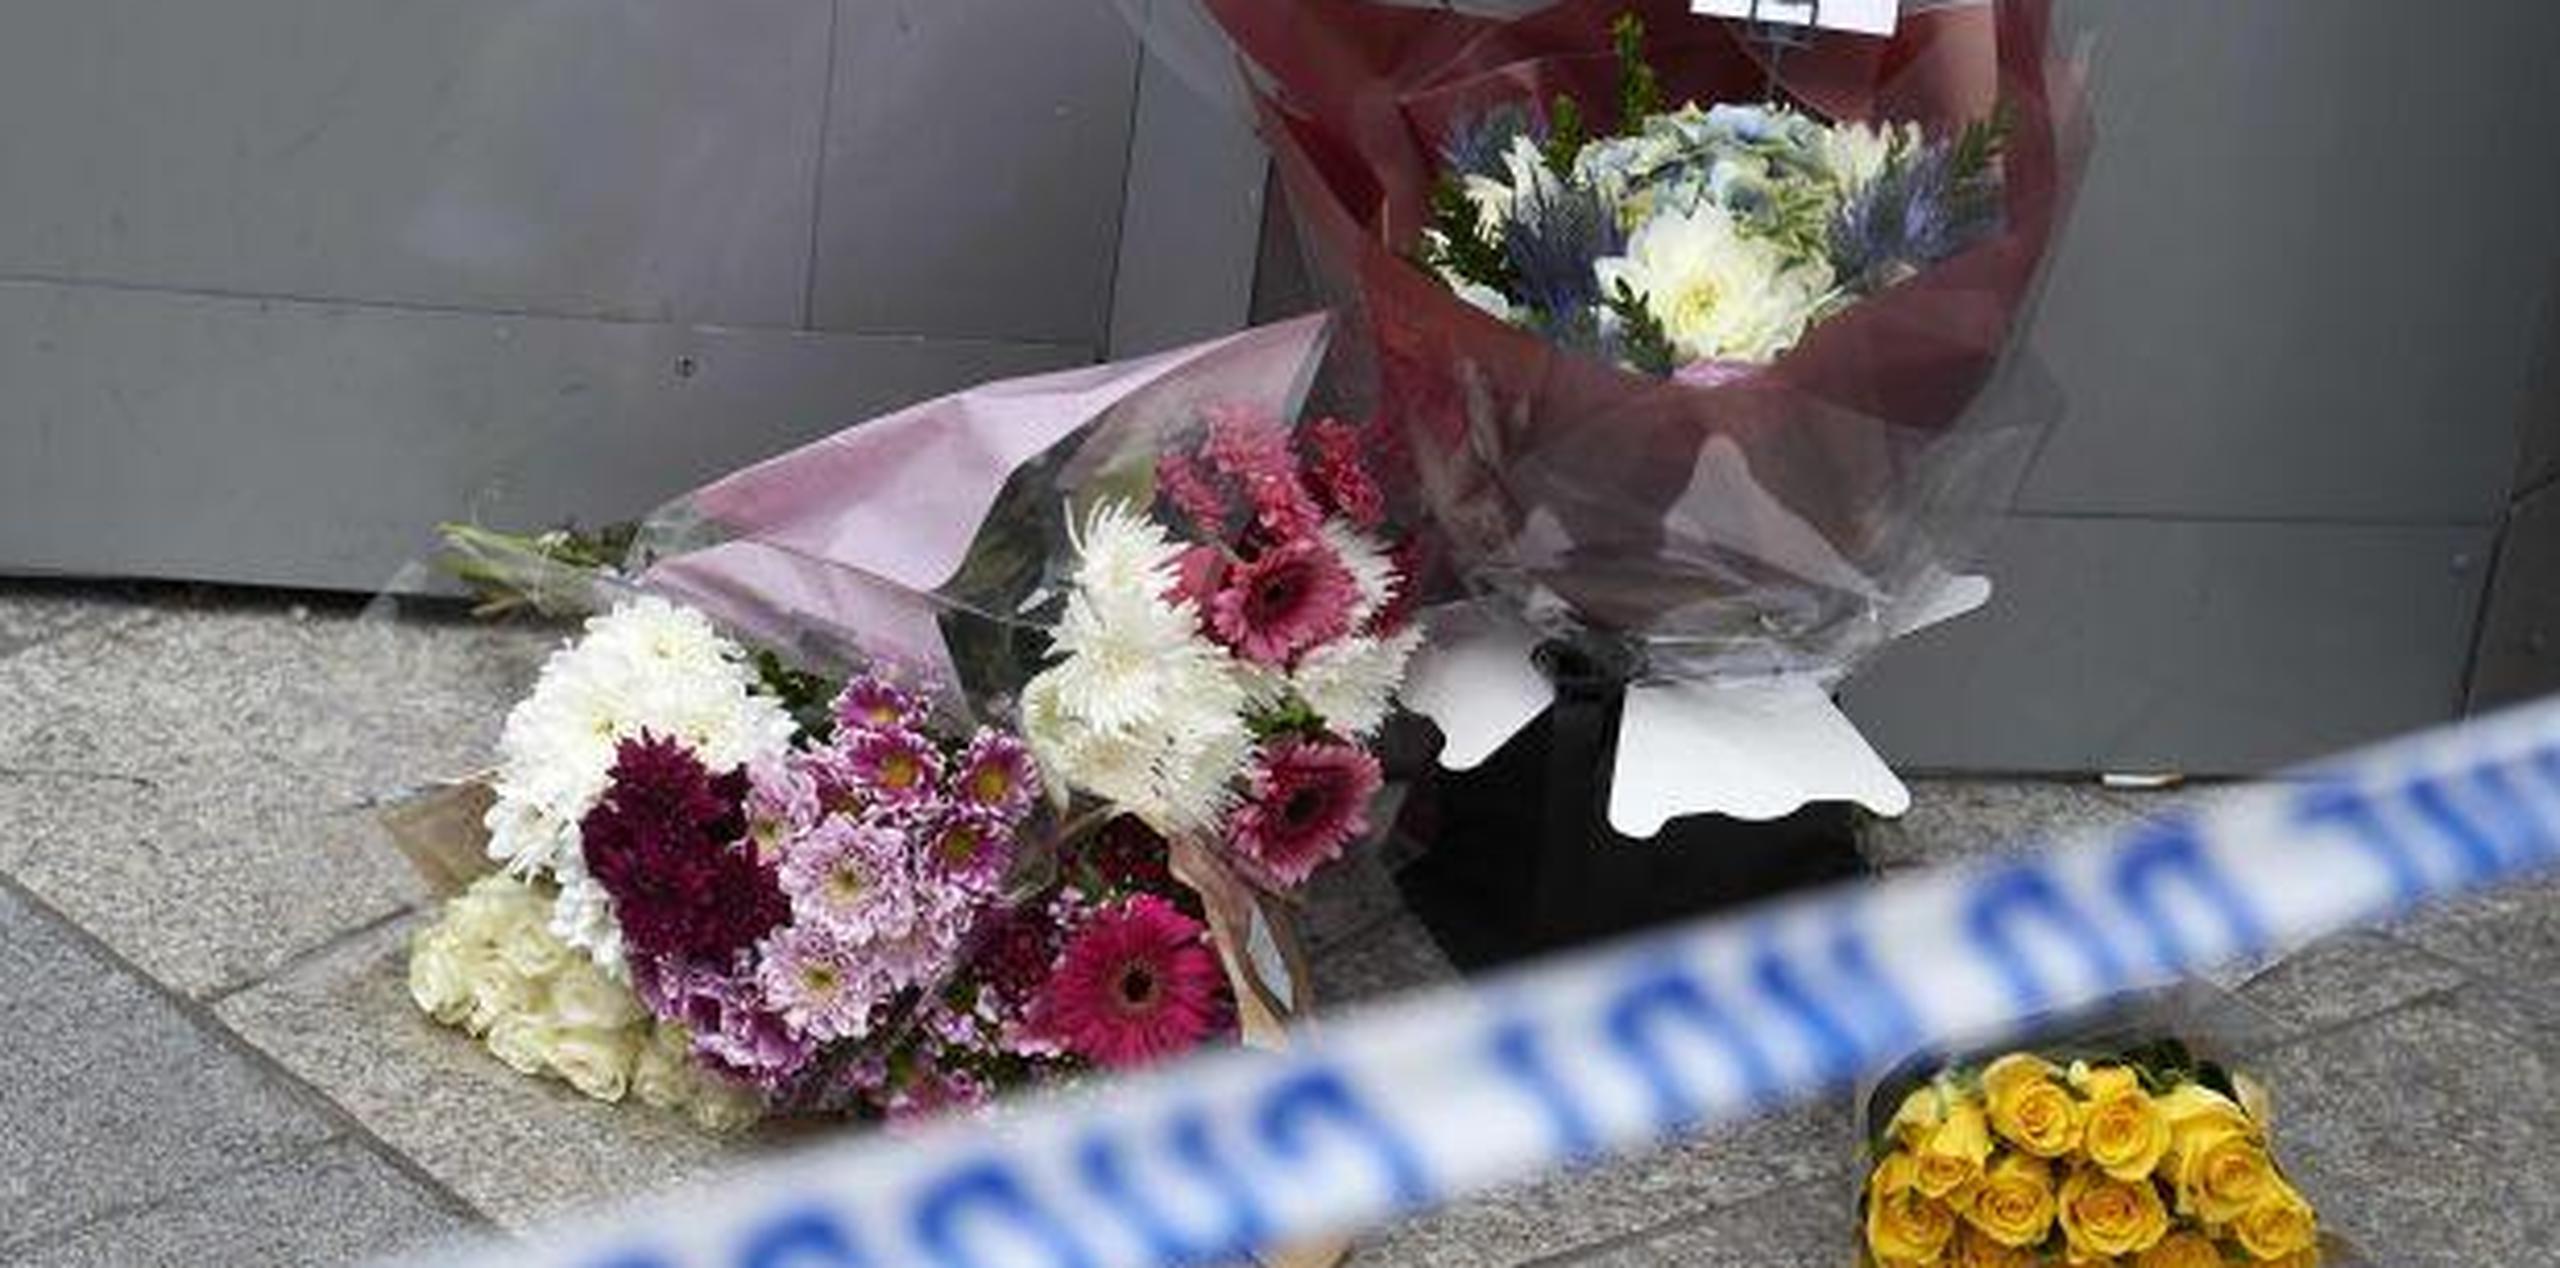 Las flores son colocadas en el barrio de Londres como un homenaje a las víctimas del ataque terrorista. (GDA)